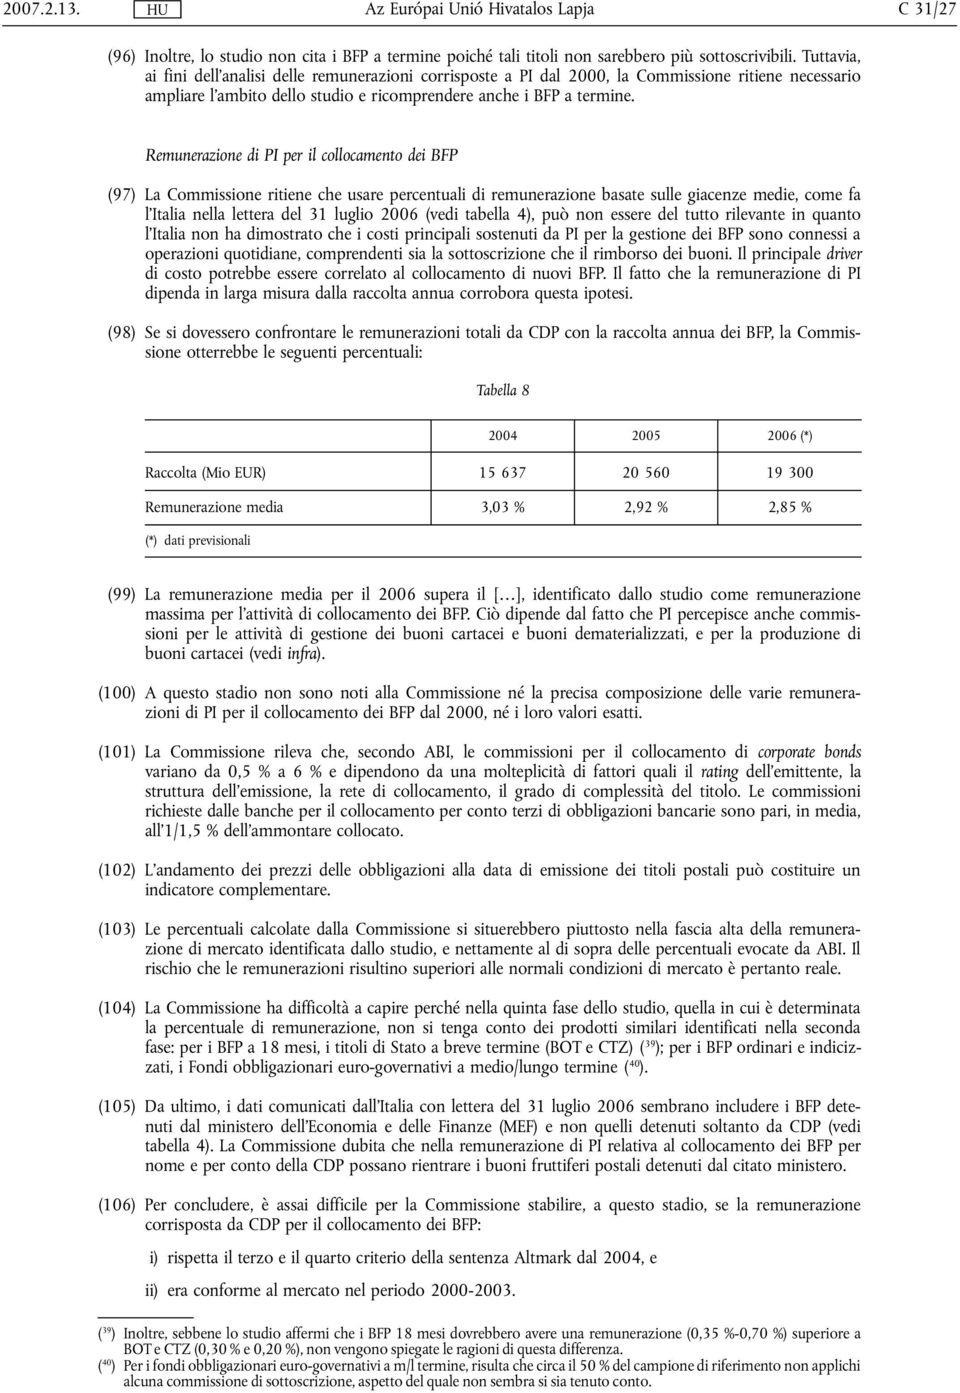 Remunerazione di PI per il collocamento dei BFP (97) La Commissione ritiene che usare percentuali di remunerazione basate sulle giacenze medie, come fa l'italia nella lettera del 31 luglio 2006 (vedi